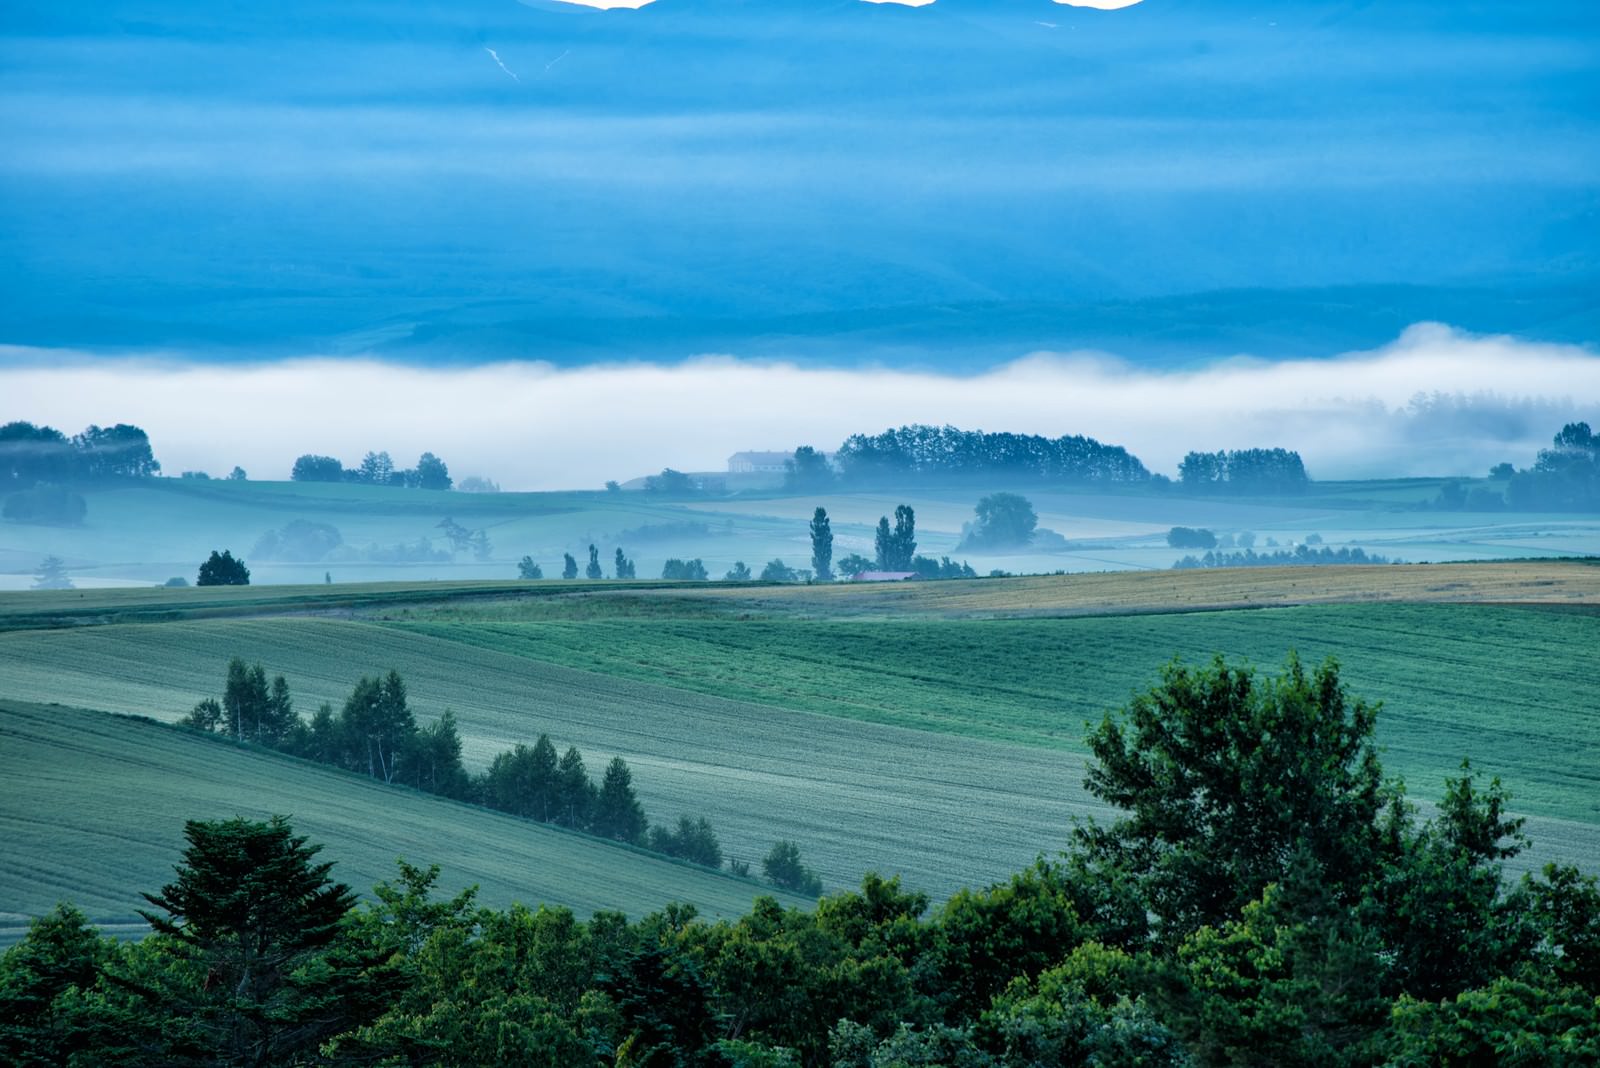 「朝霧に包まれる美瑛町の丘 | フリー素材のぱくたそ」の写真